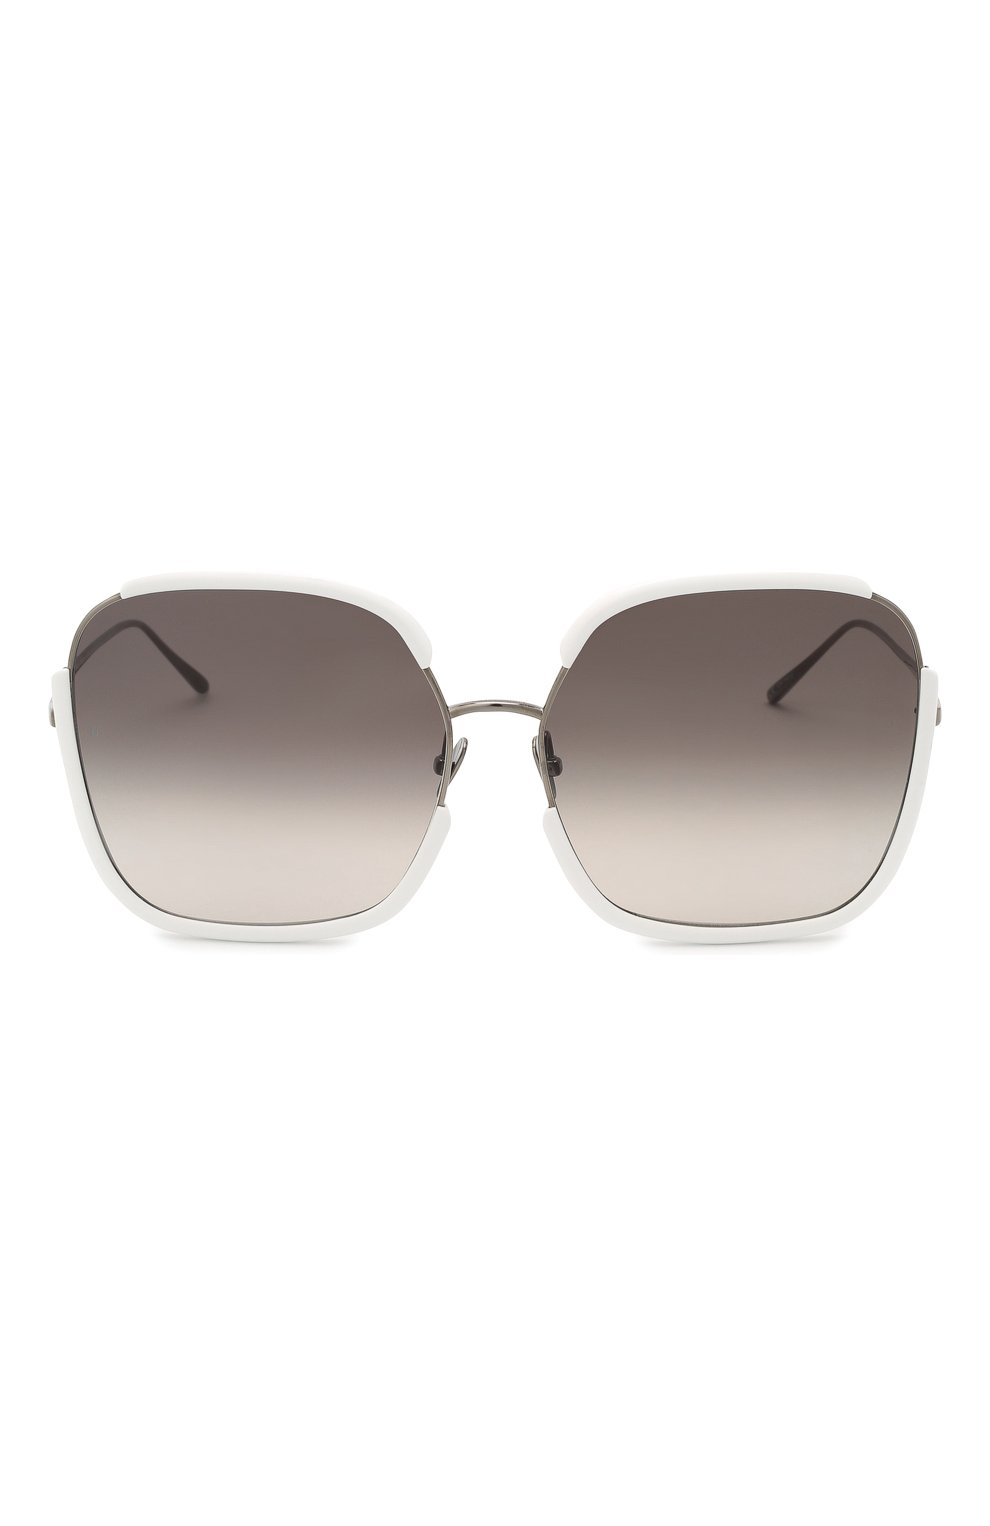 Женские солнцезащитные очки LINDA FARROW белого цвета, арт. LFL1210C4 SUN | Фото 3 (Тип очков: С/з; Очки форма: Бабочка)